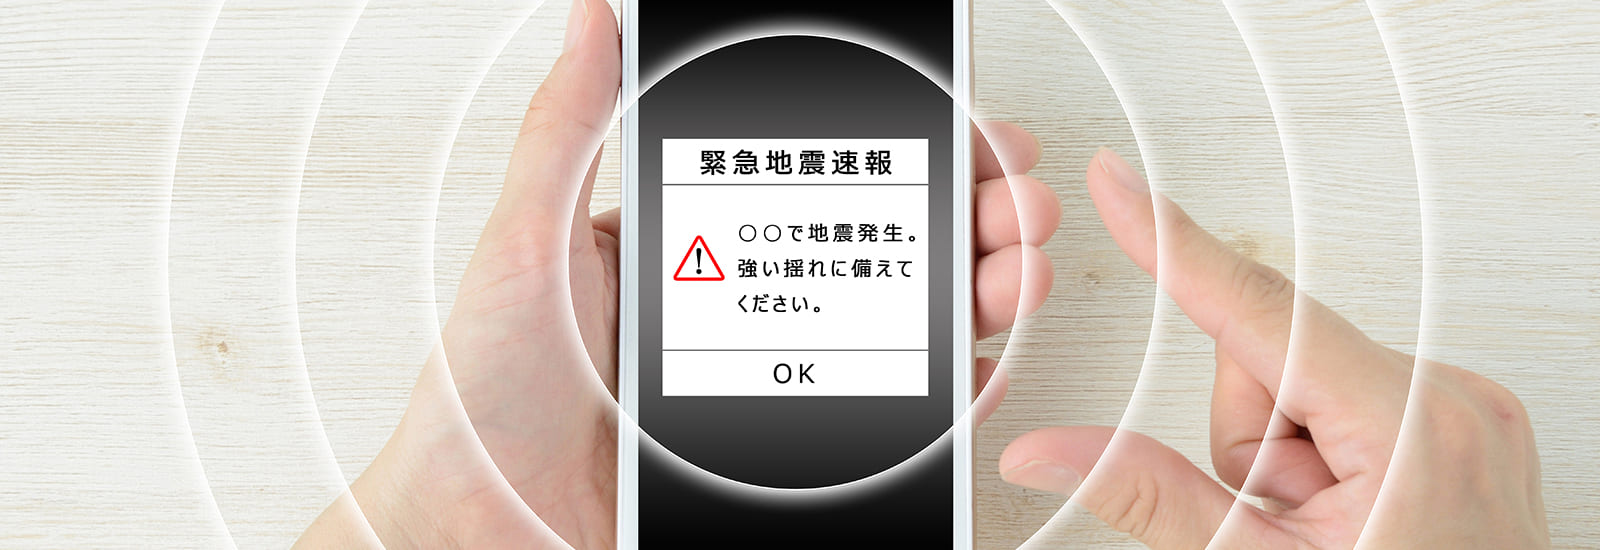 スマートフォンで地震早期警報システム受信のイメージ